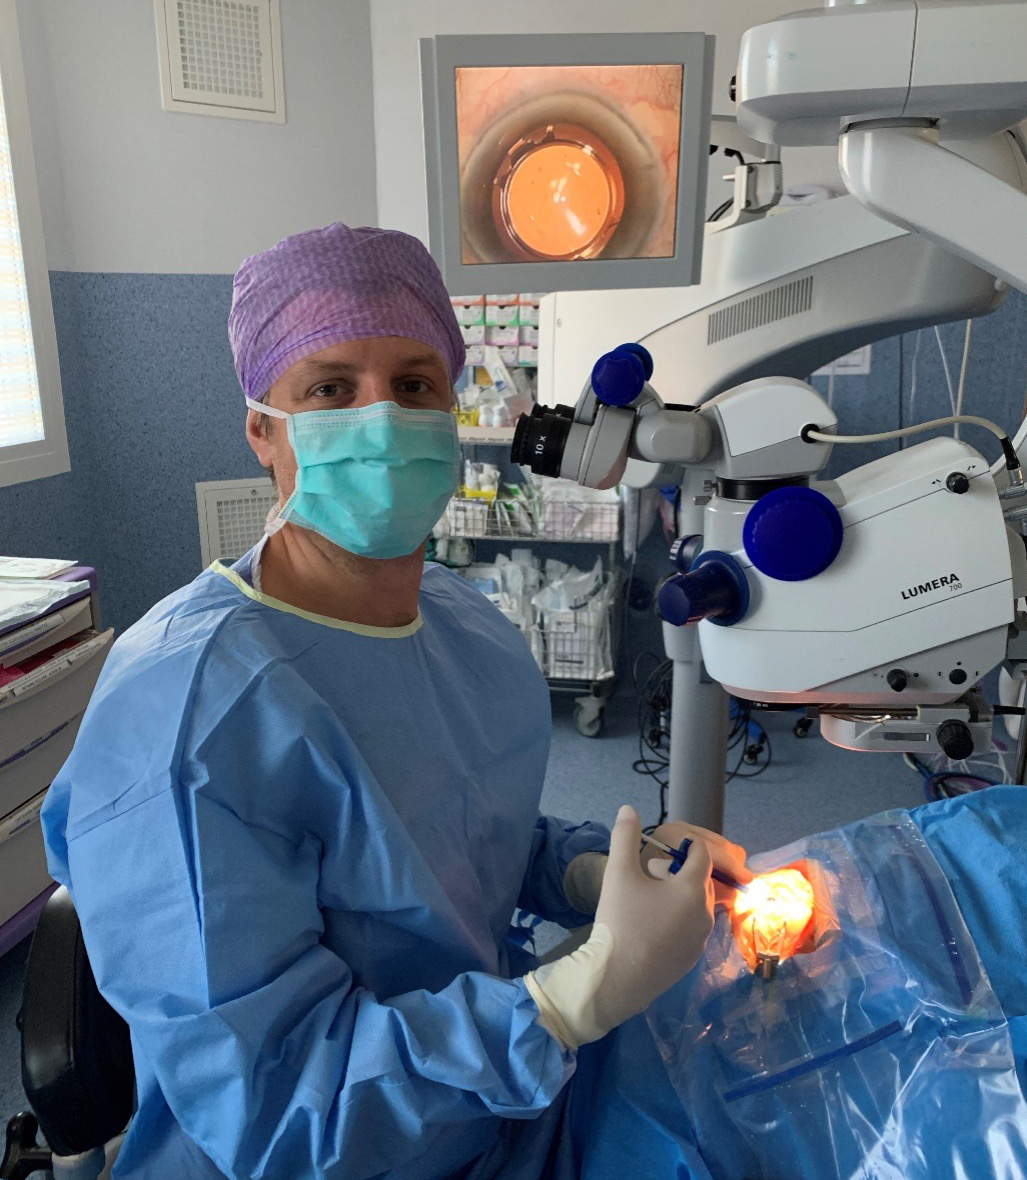 Fin d’intervention de la chirurgie de cataracte, implant déplié et centré (Dr Ghetemme)